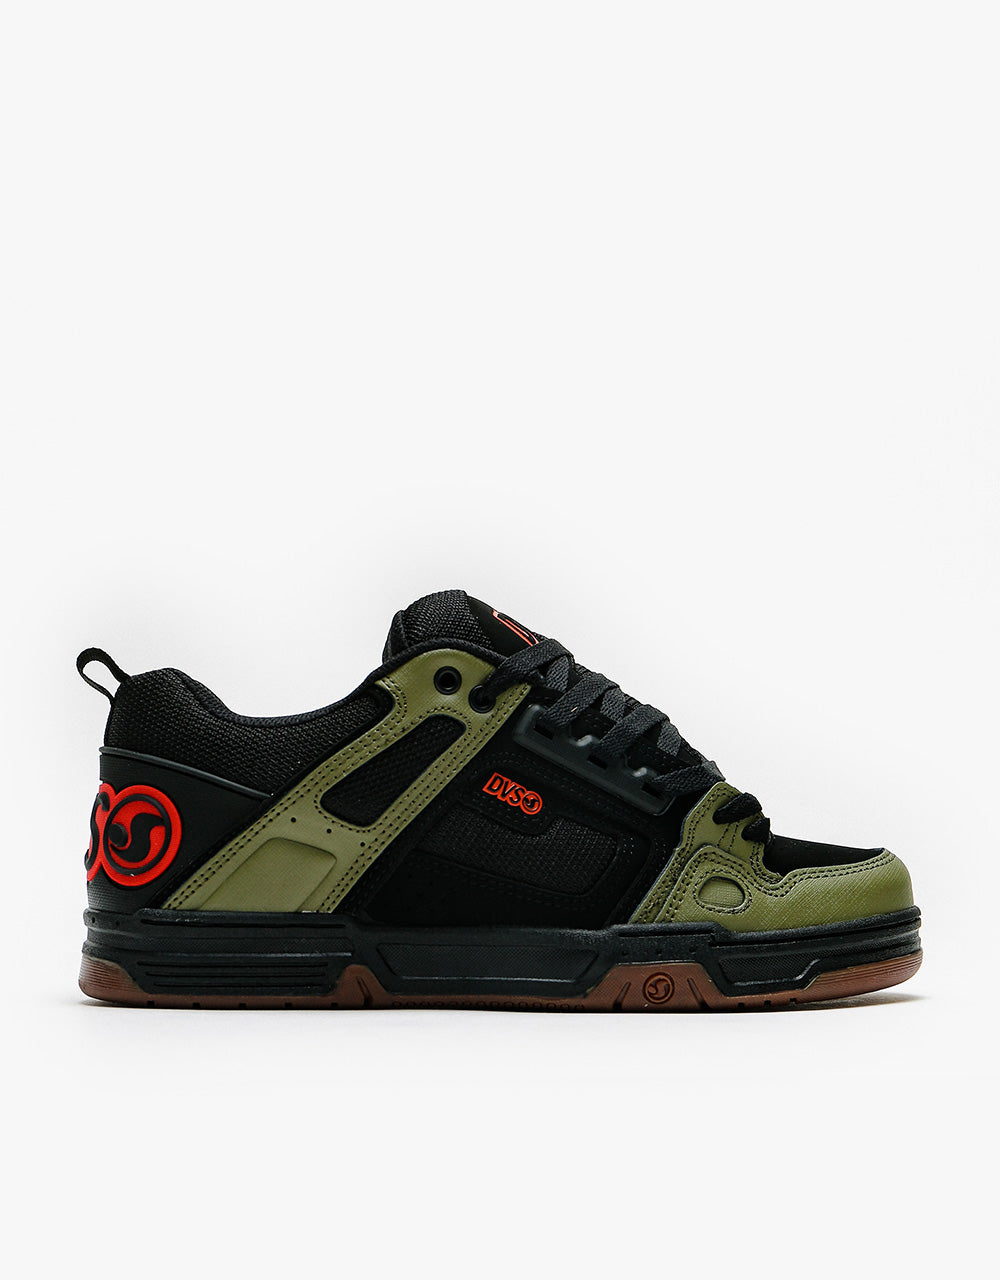 DVS Comanche Skate Shoes - Black/Olive/Orange Nubuck – Route One